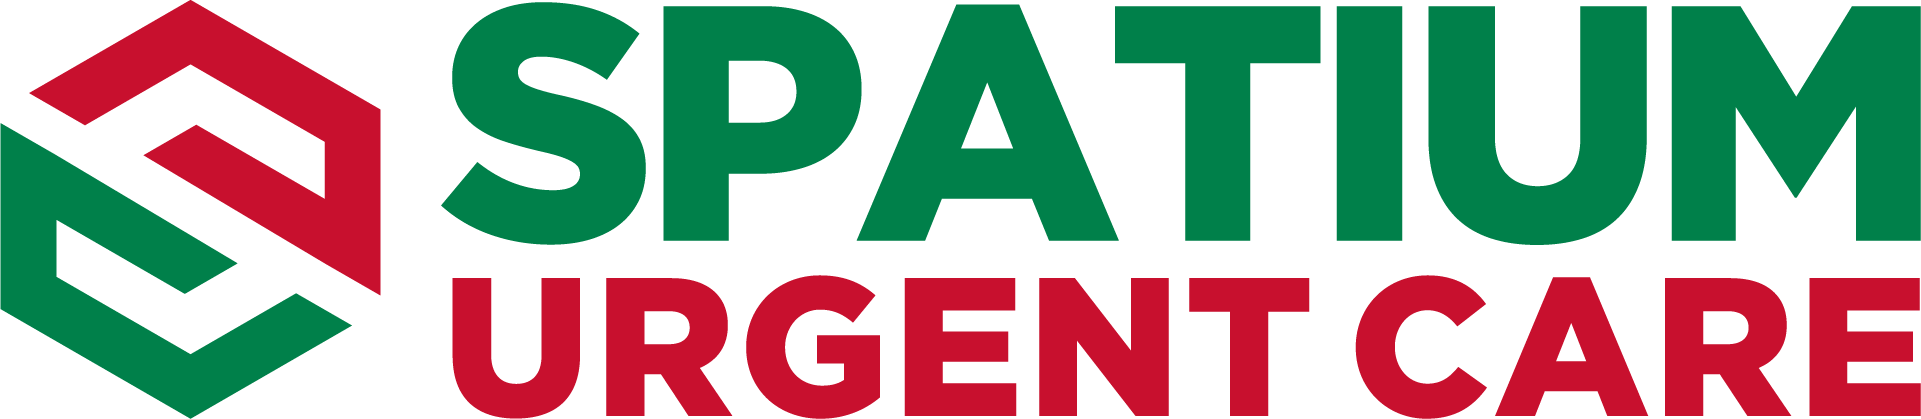 Spatium Urgent Care Logo